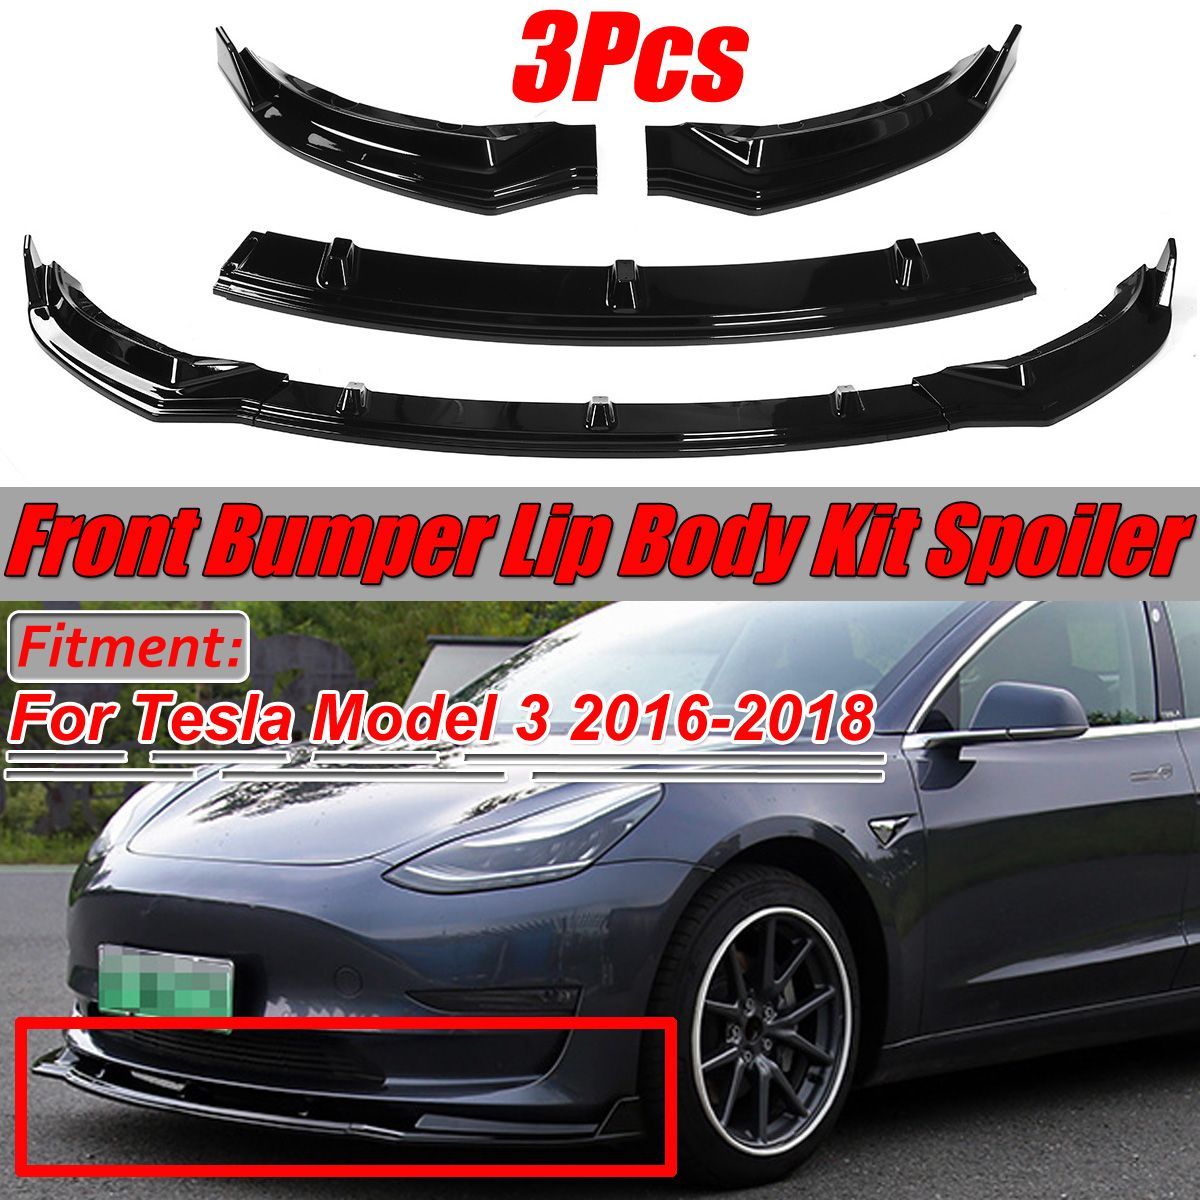 3Pcs-Glossy-Black-Car-Front-Bumper-Protector-Lip-Body-Kit-Spoiler--For-Tesla-Model-3-2016-2019-1581768